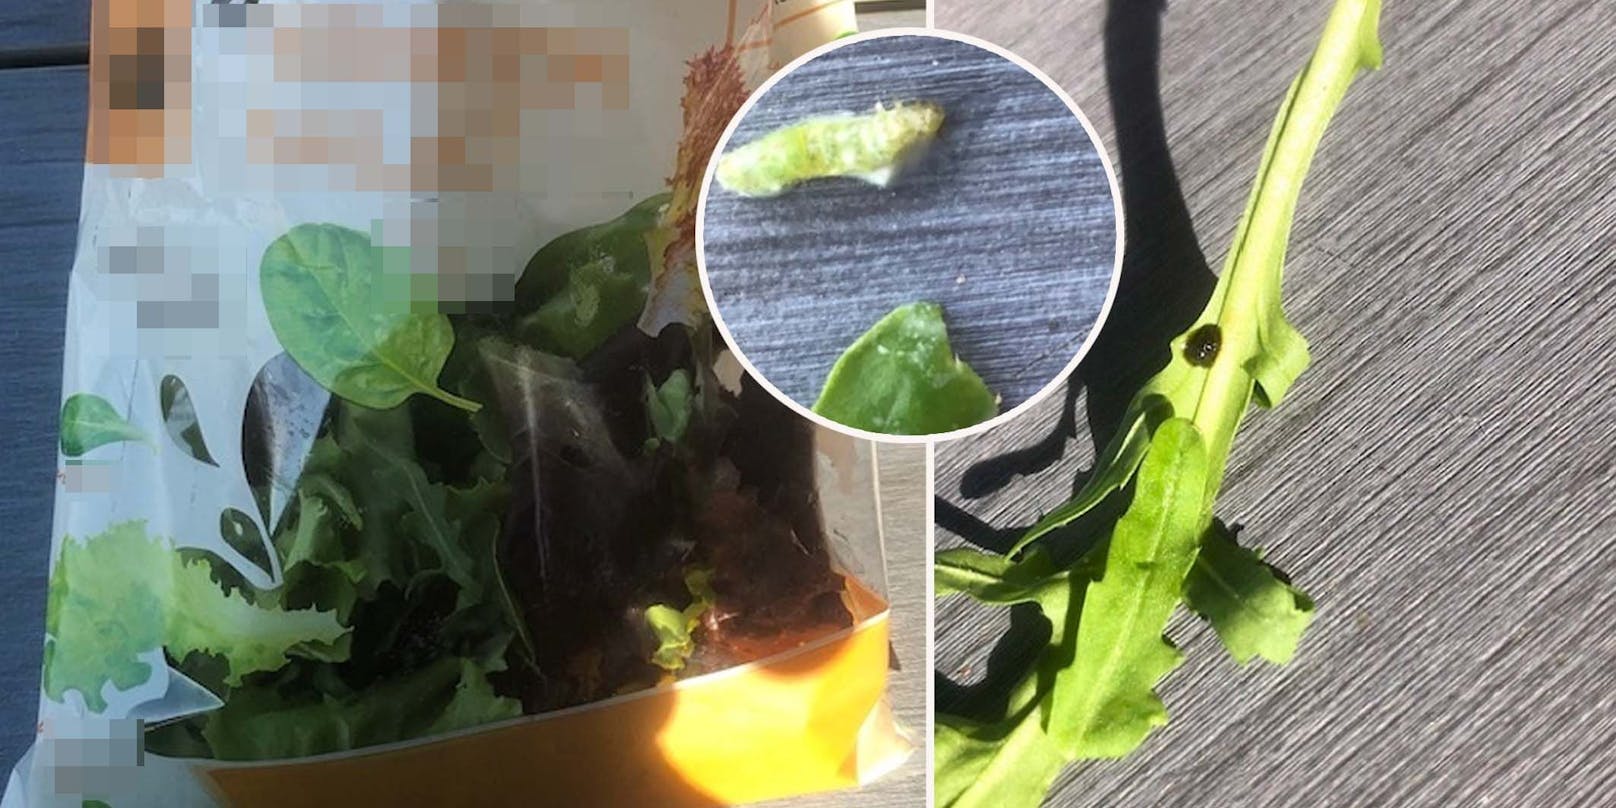 "Wurm und Käfer" – Frau aus NÖ macht Ekelfund in Salat